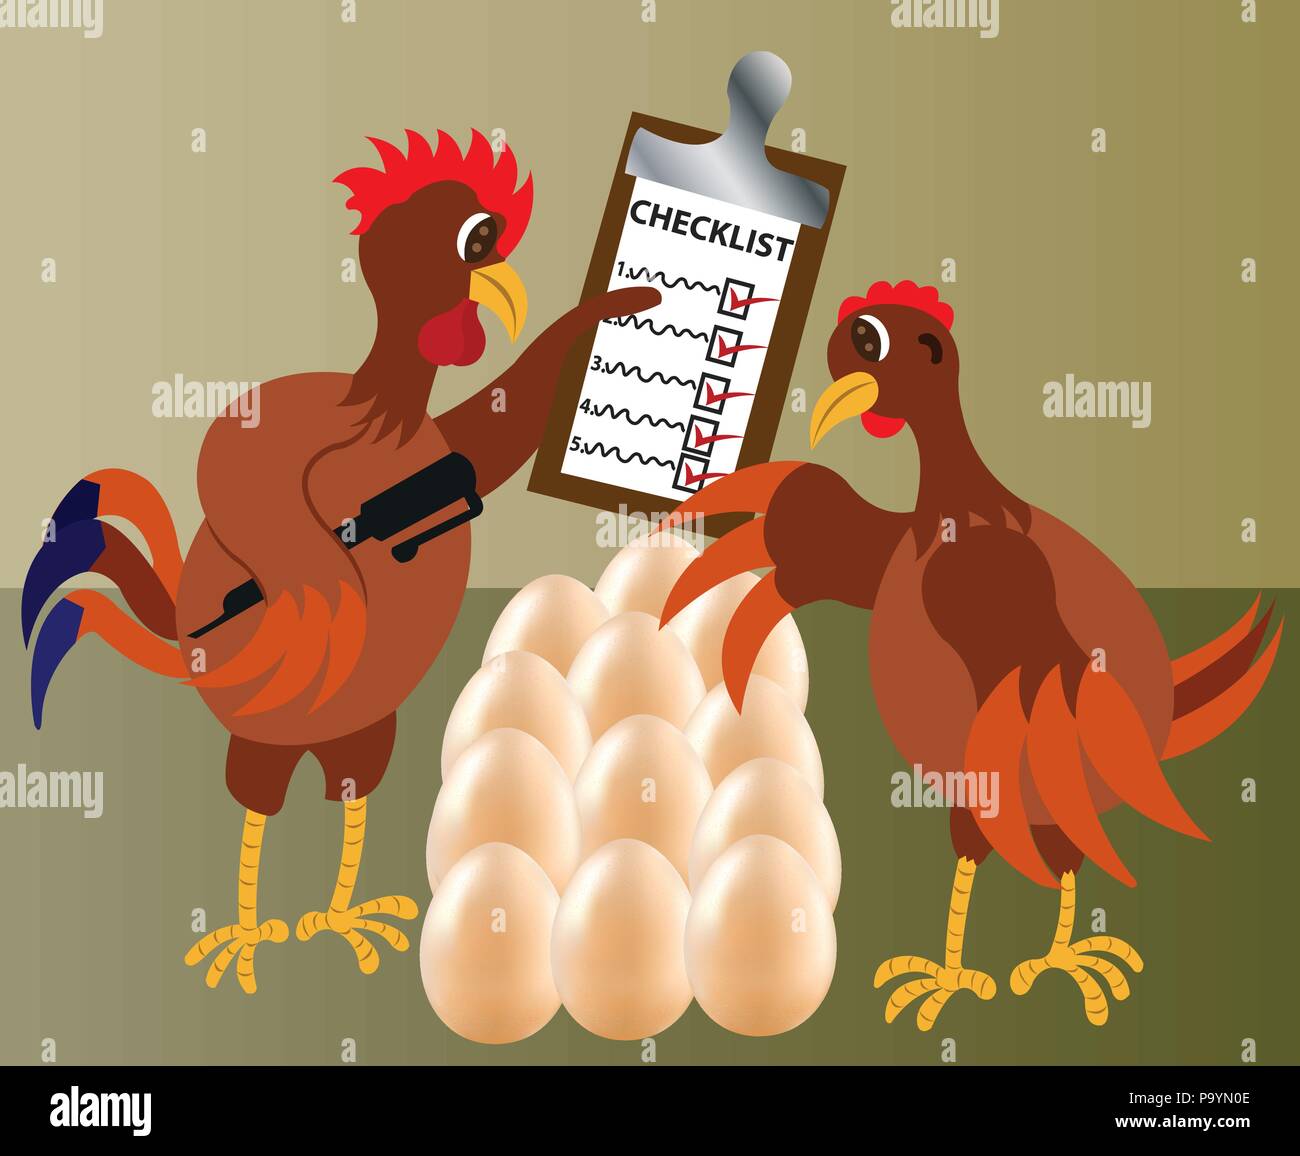 Deux vérifier leurs oeufs de poulet pour confirmer qu'ils sont tous présents, Illustration de Vecteur